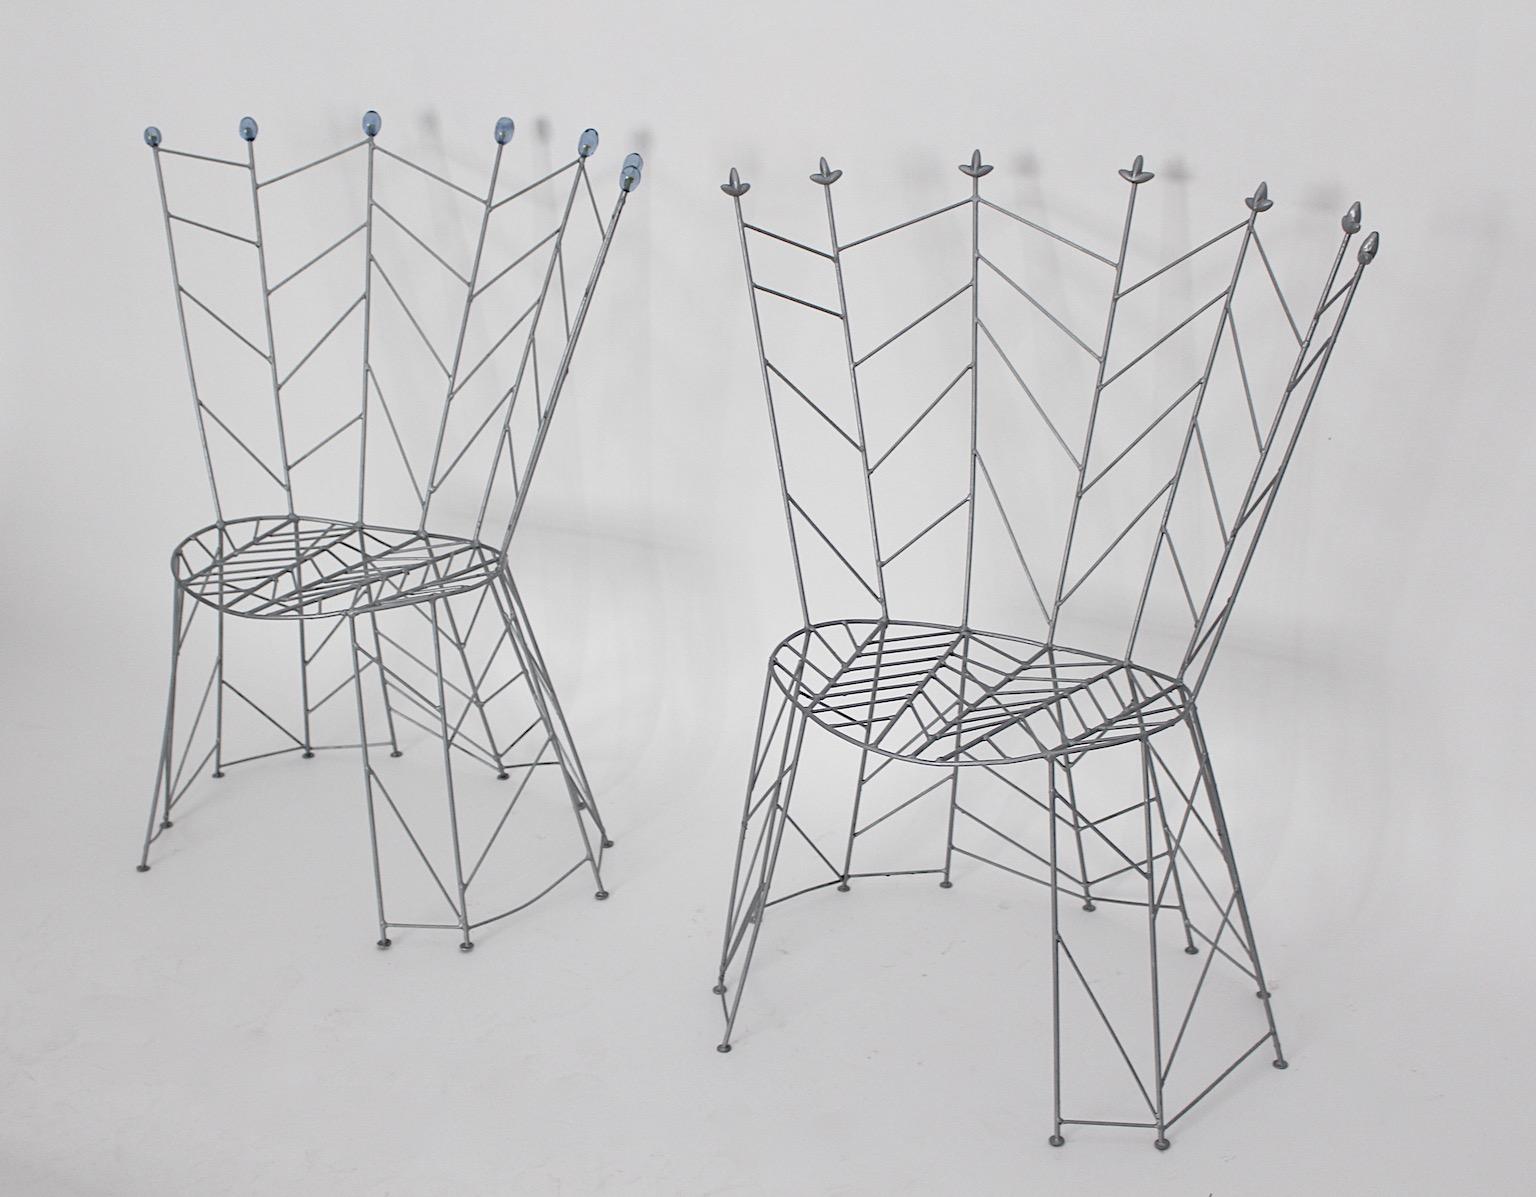 Skulpturale Vintage-Stühle aus Metall, Modell Pupeny oder Knospen von Bohuslav Horak, 1988. 
Ein skulpturales und märchenhaftes Design mit einem Twist, diese Beistellstühle zeigen diese Kombination. Dieses Modell namens Pupeny (Knospen), entworfen